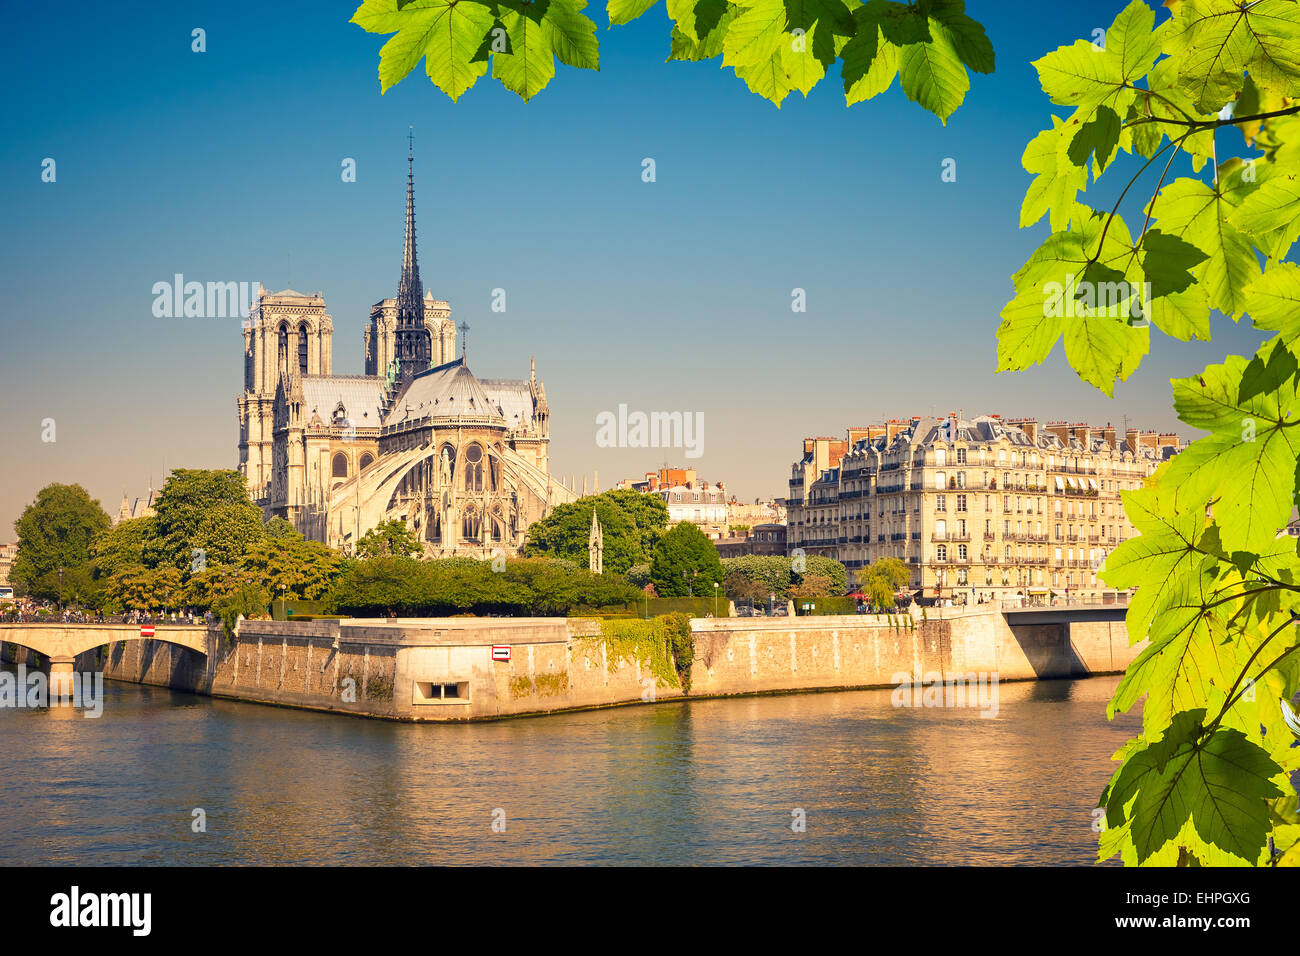 Notre Dame de Paris Stock Photo